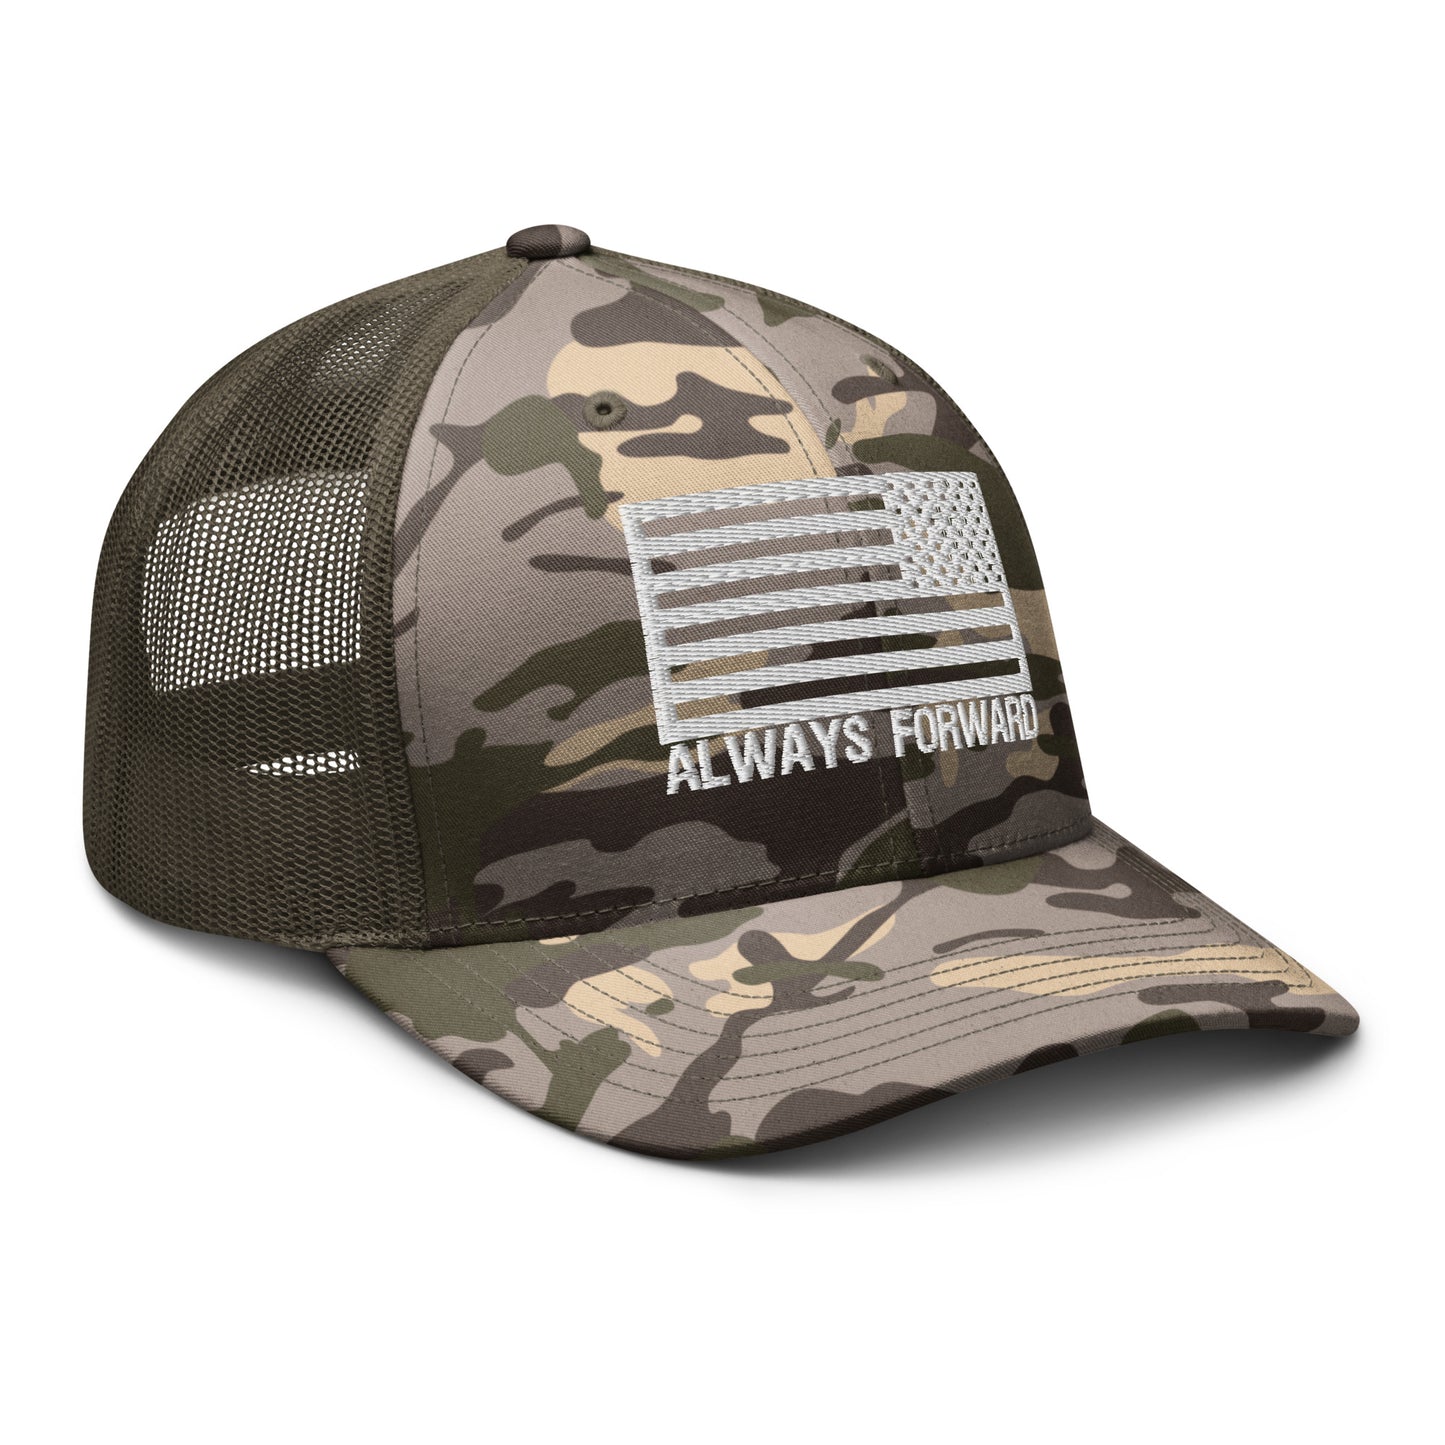 Always Forward Camouflage trucker hat